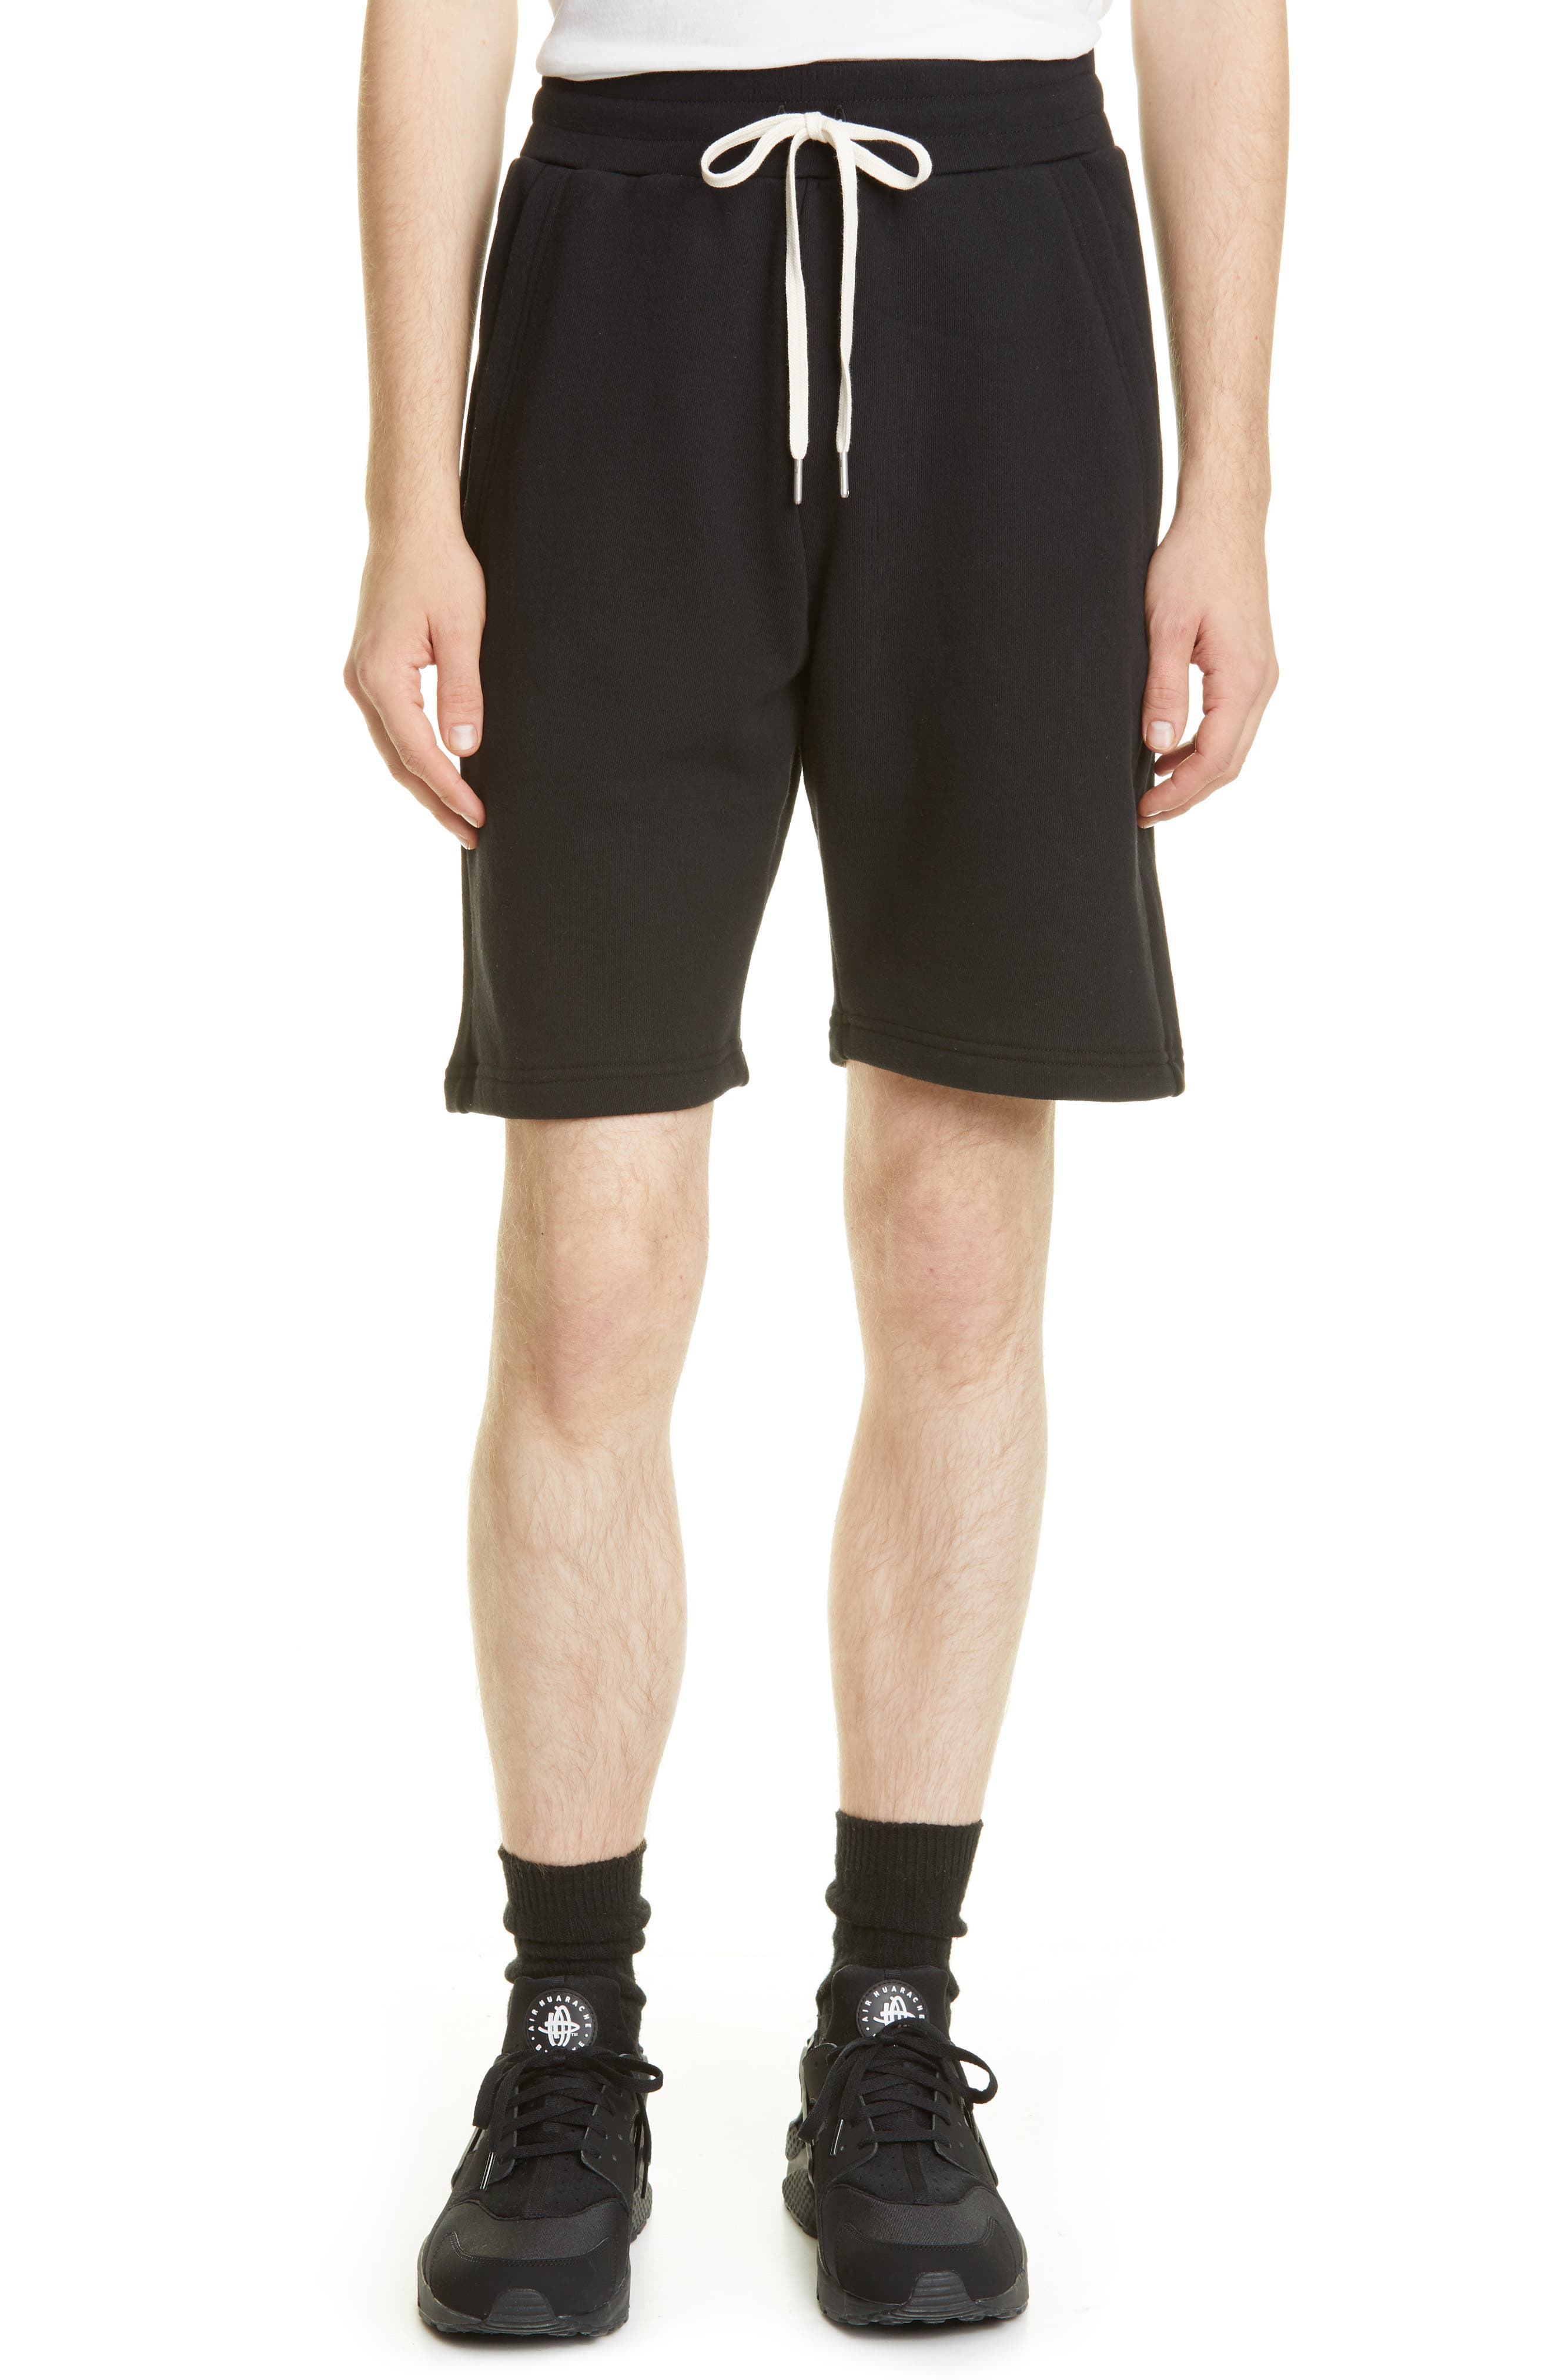 John Elliott Men's Crimson Drawstring Shorts in Black at Nordstrom, Size Medium